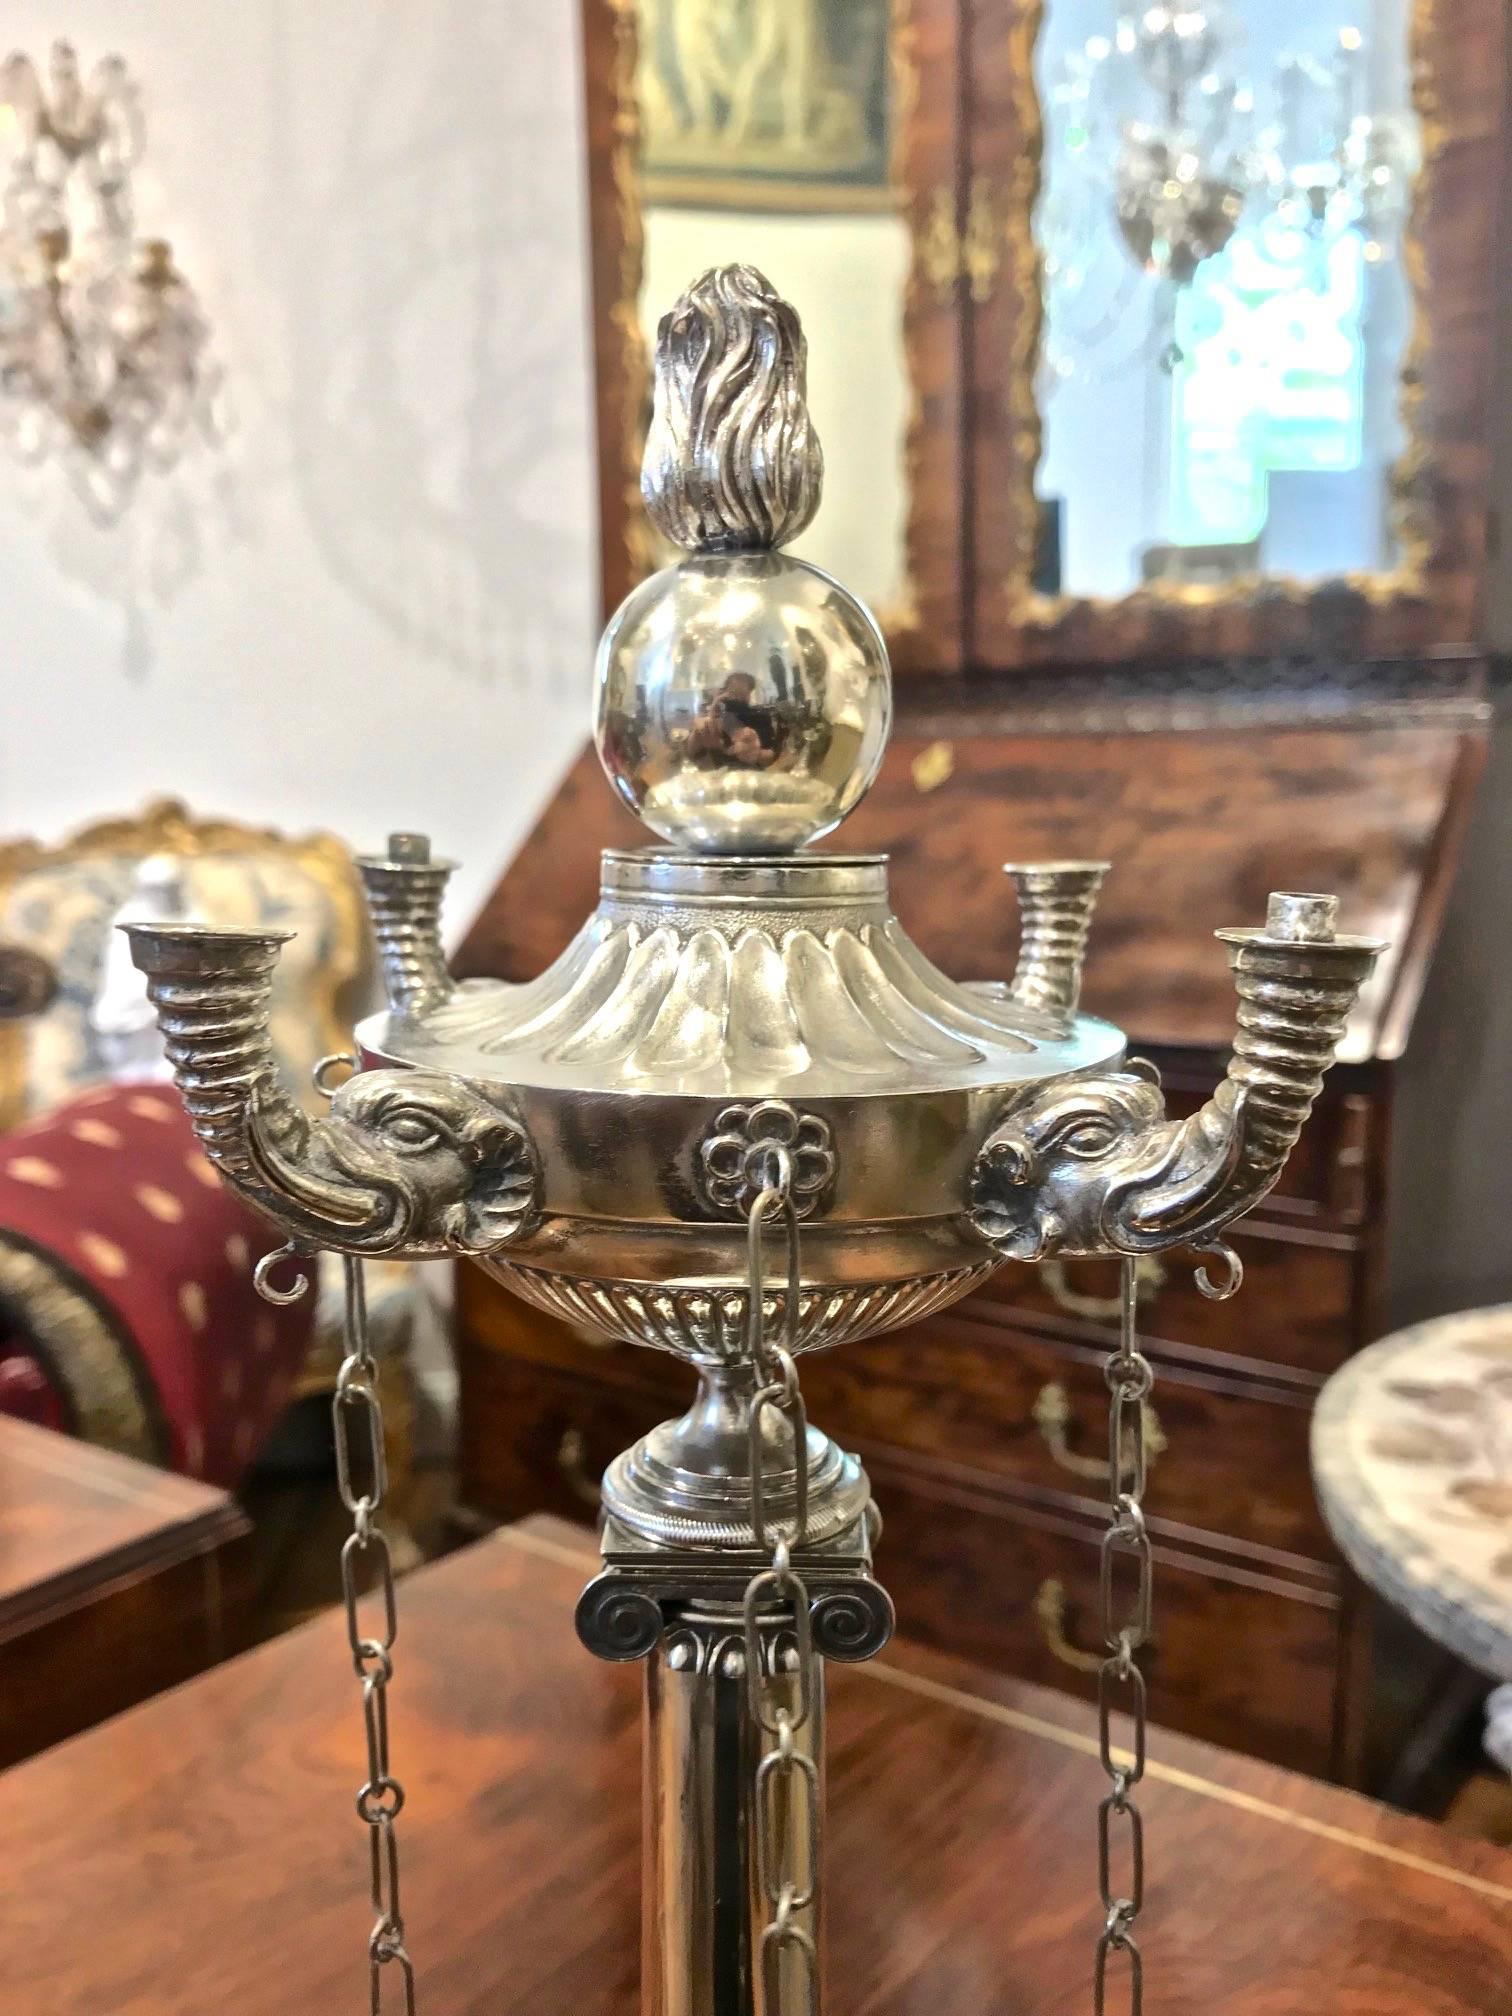 Neoklassisch inspirierte Öllampe aus indischem Silber

--Anfang des 19. Jahrhunderts
--Original durchgehend einschließlich Dochtwerkzeug und Flamme/Kugelknauf
---- stark inspiriert von den römischen und luzernischen Öllampen aus Silber des